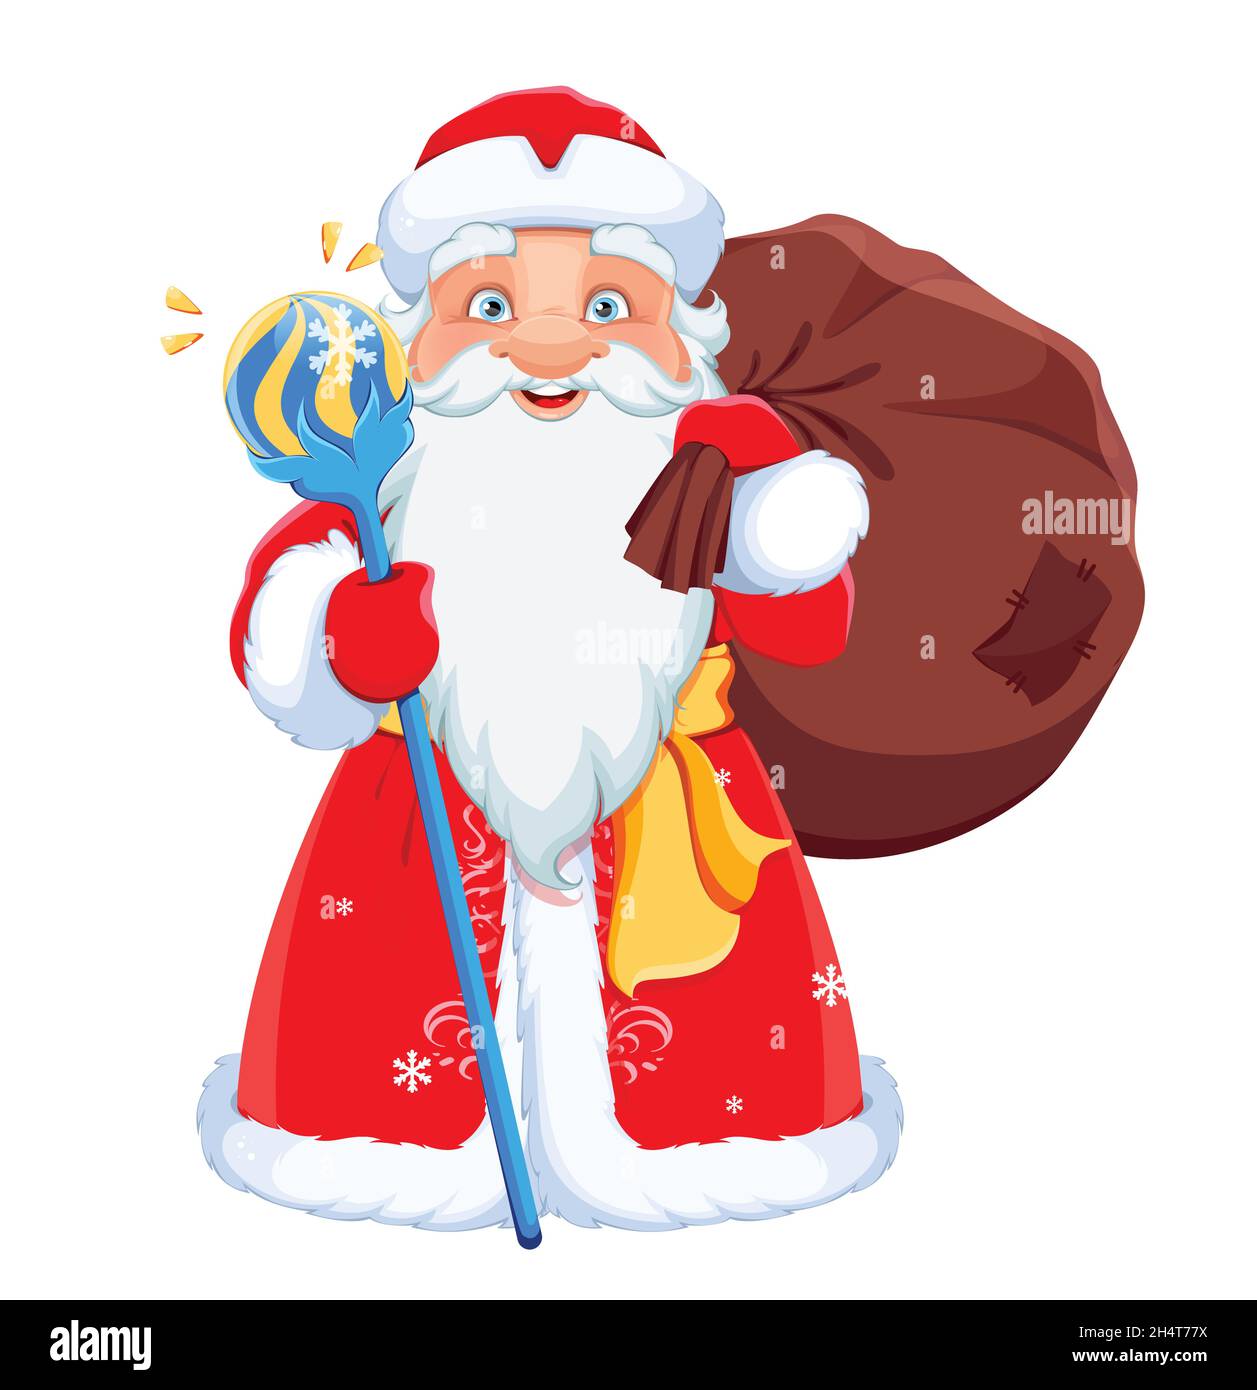 Frohe Weihnachten und Frohes neues Jahr. Russischer Weihnachtsmann Vater Frost. Niedliche Zeichentrickfigur für den Urlaub. Stock Vektorgrafik auf weißem Hintergrund Stock Vektor